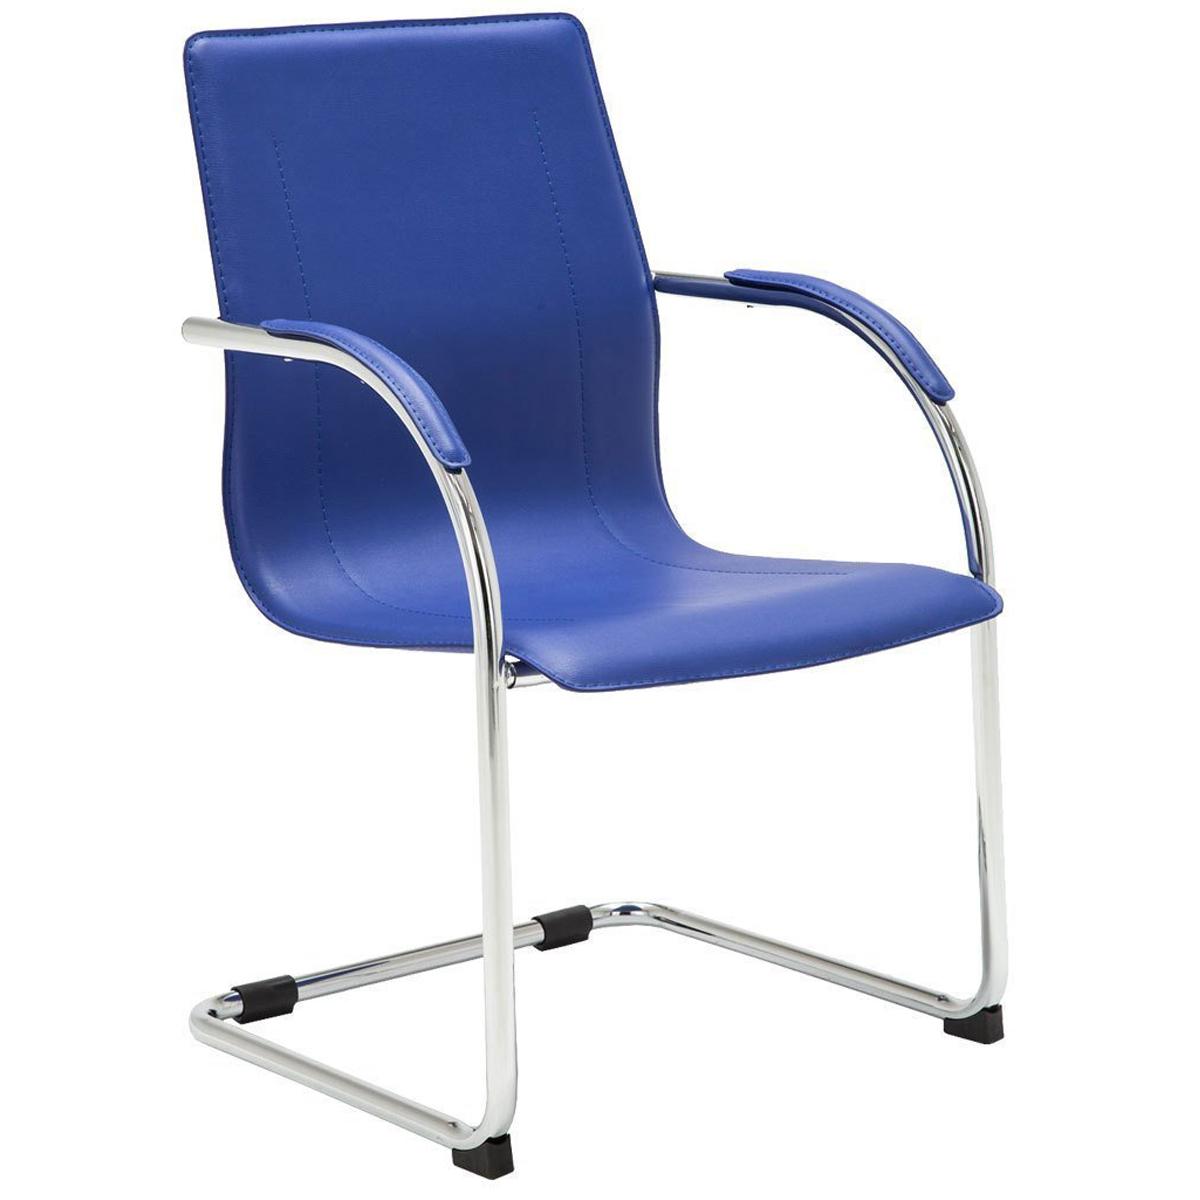 Cadeira de Visita FLAP, Estrutura Metálica, Design Moderno, Em Pele, Cor Azul